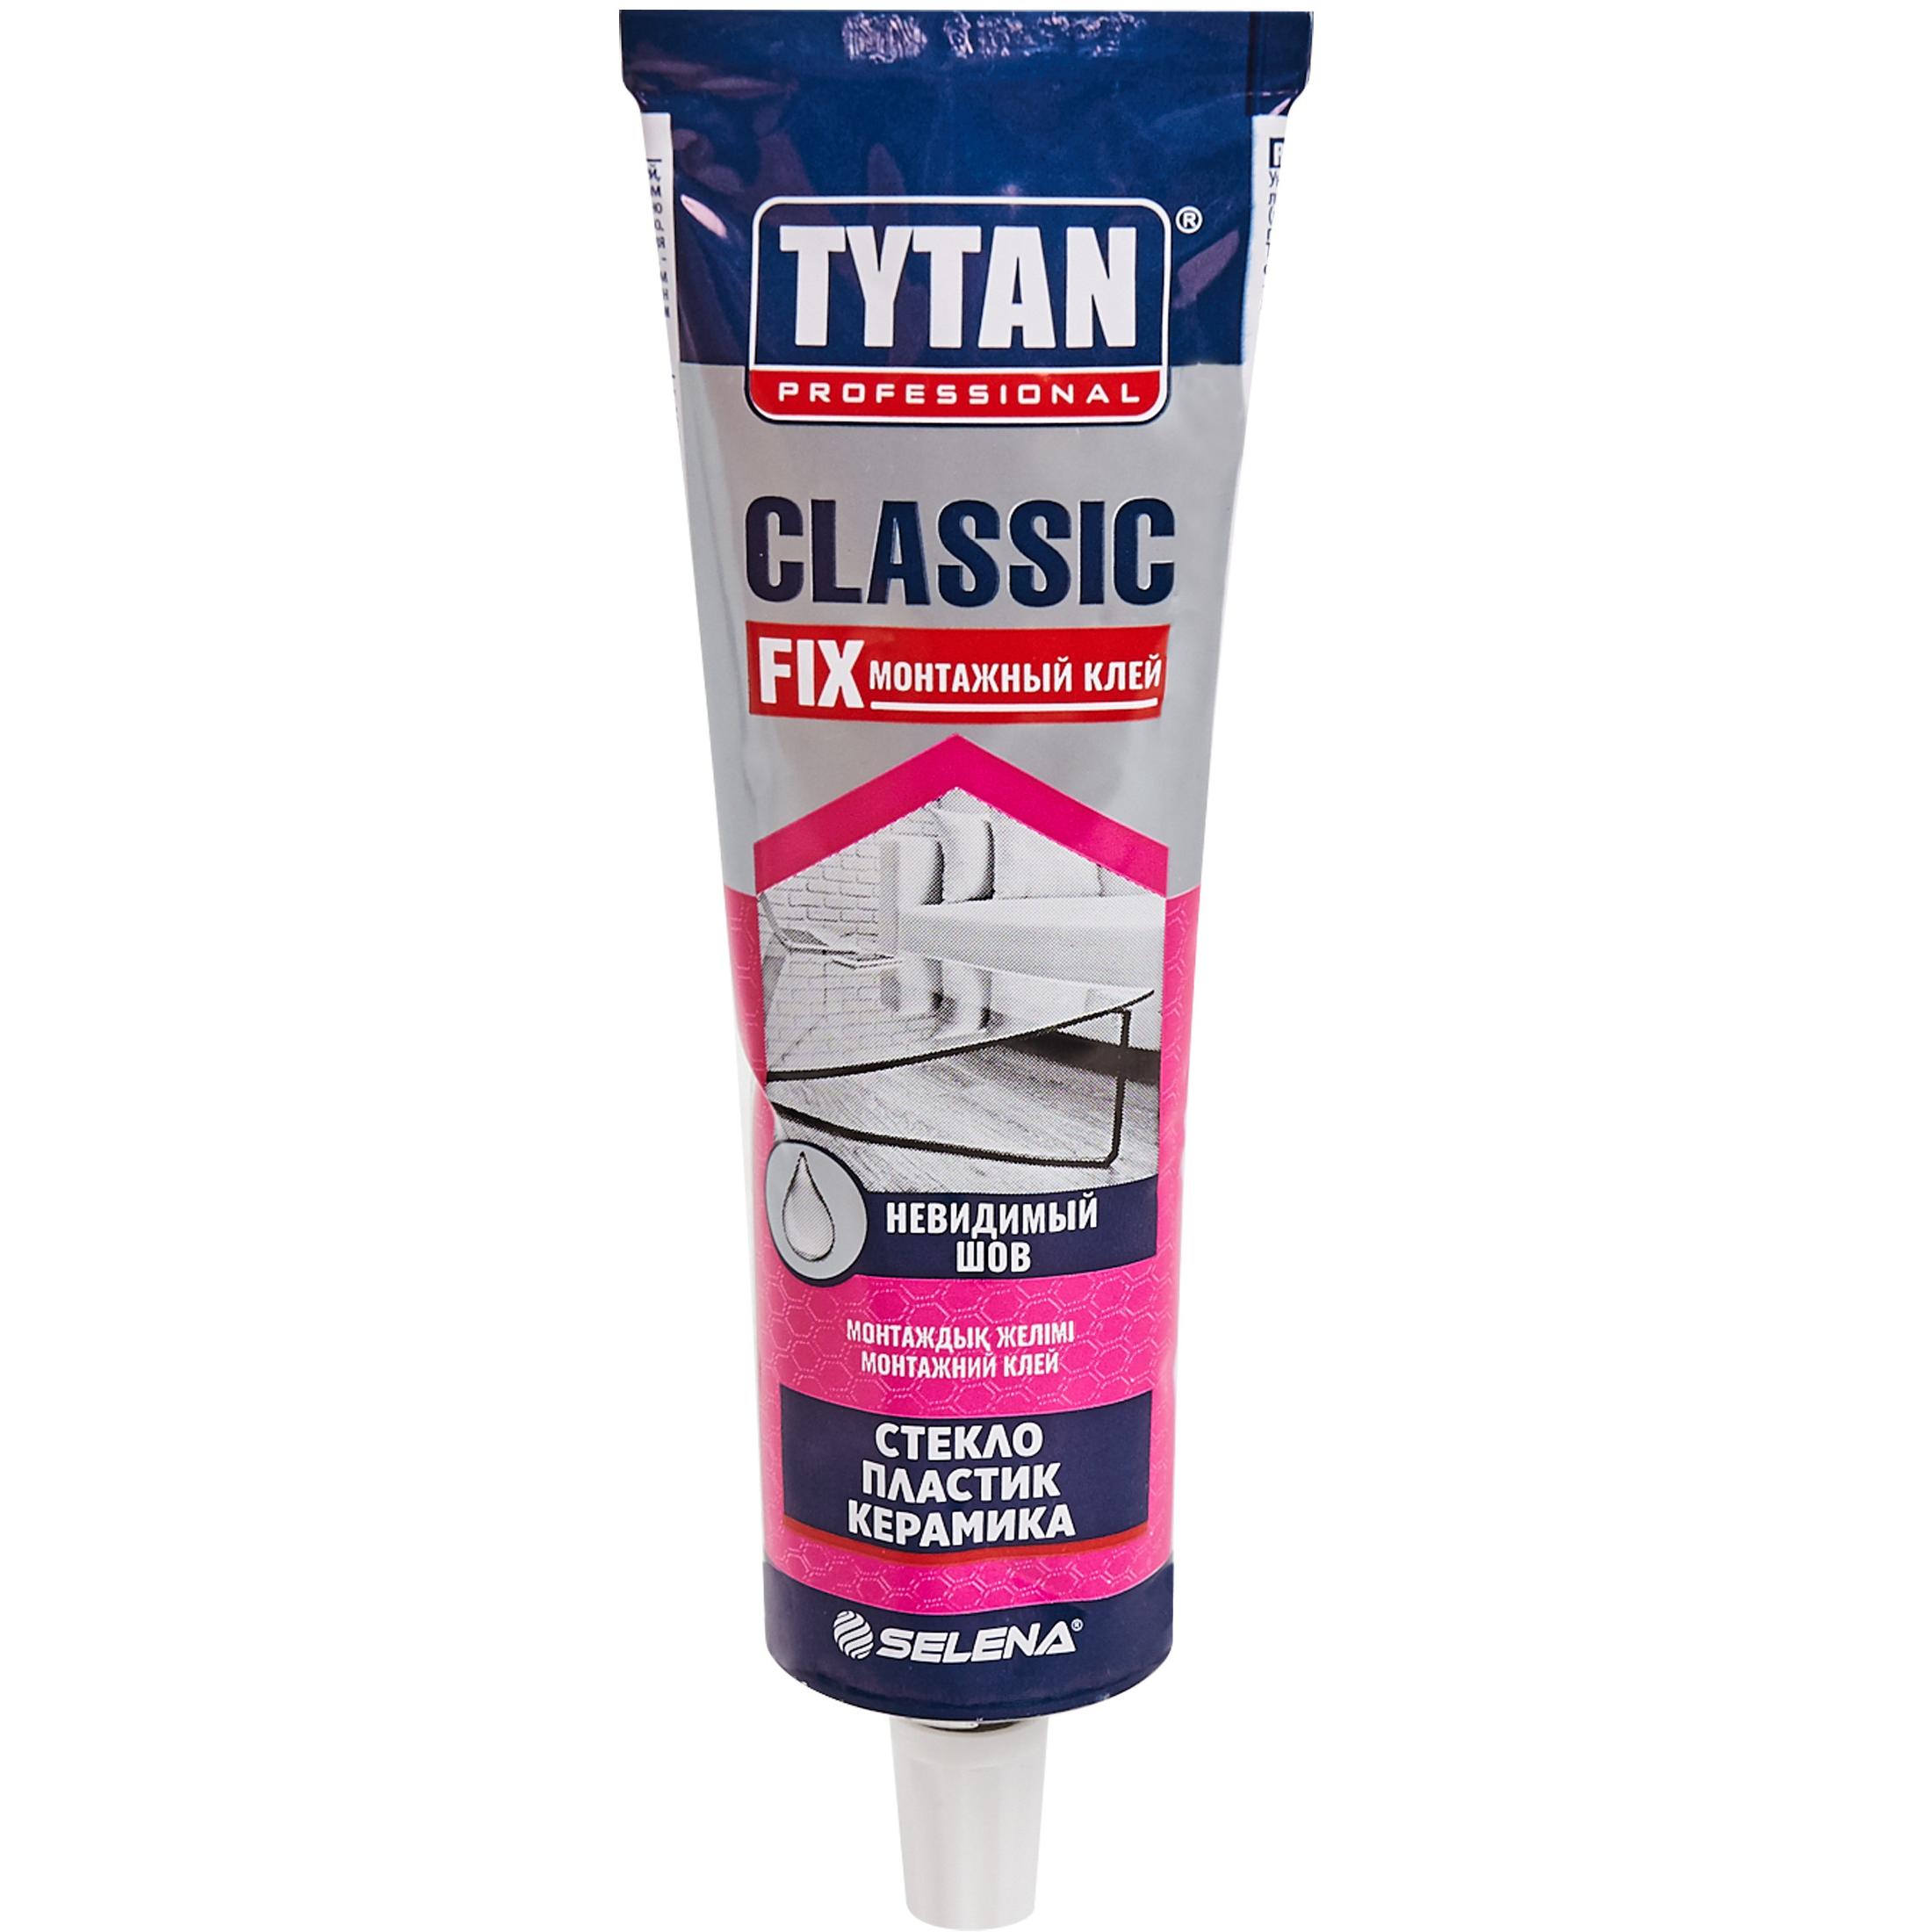 Клей tytan fix прозрачный. Клей монтажный Tytan Classic Fix, 100 мл. Tytan professional Classic Fix монтажный клей. Монтажный клей 1 Титан Классик. Tytan Classic Fix клей монтажный (бесцветный) 310мл.